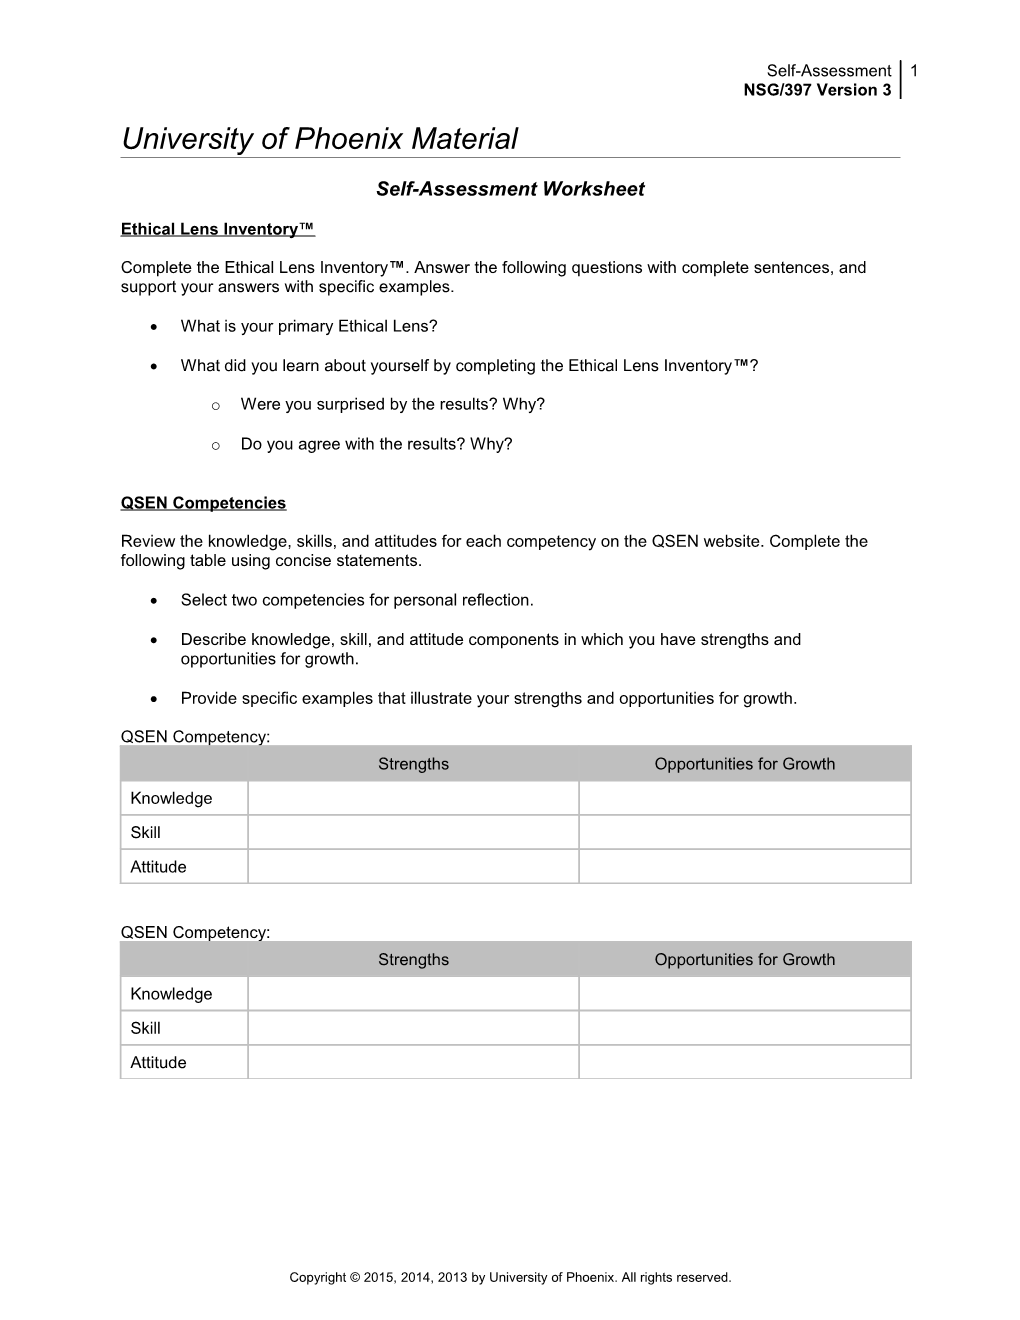 Self-Assessment Worksheet